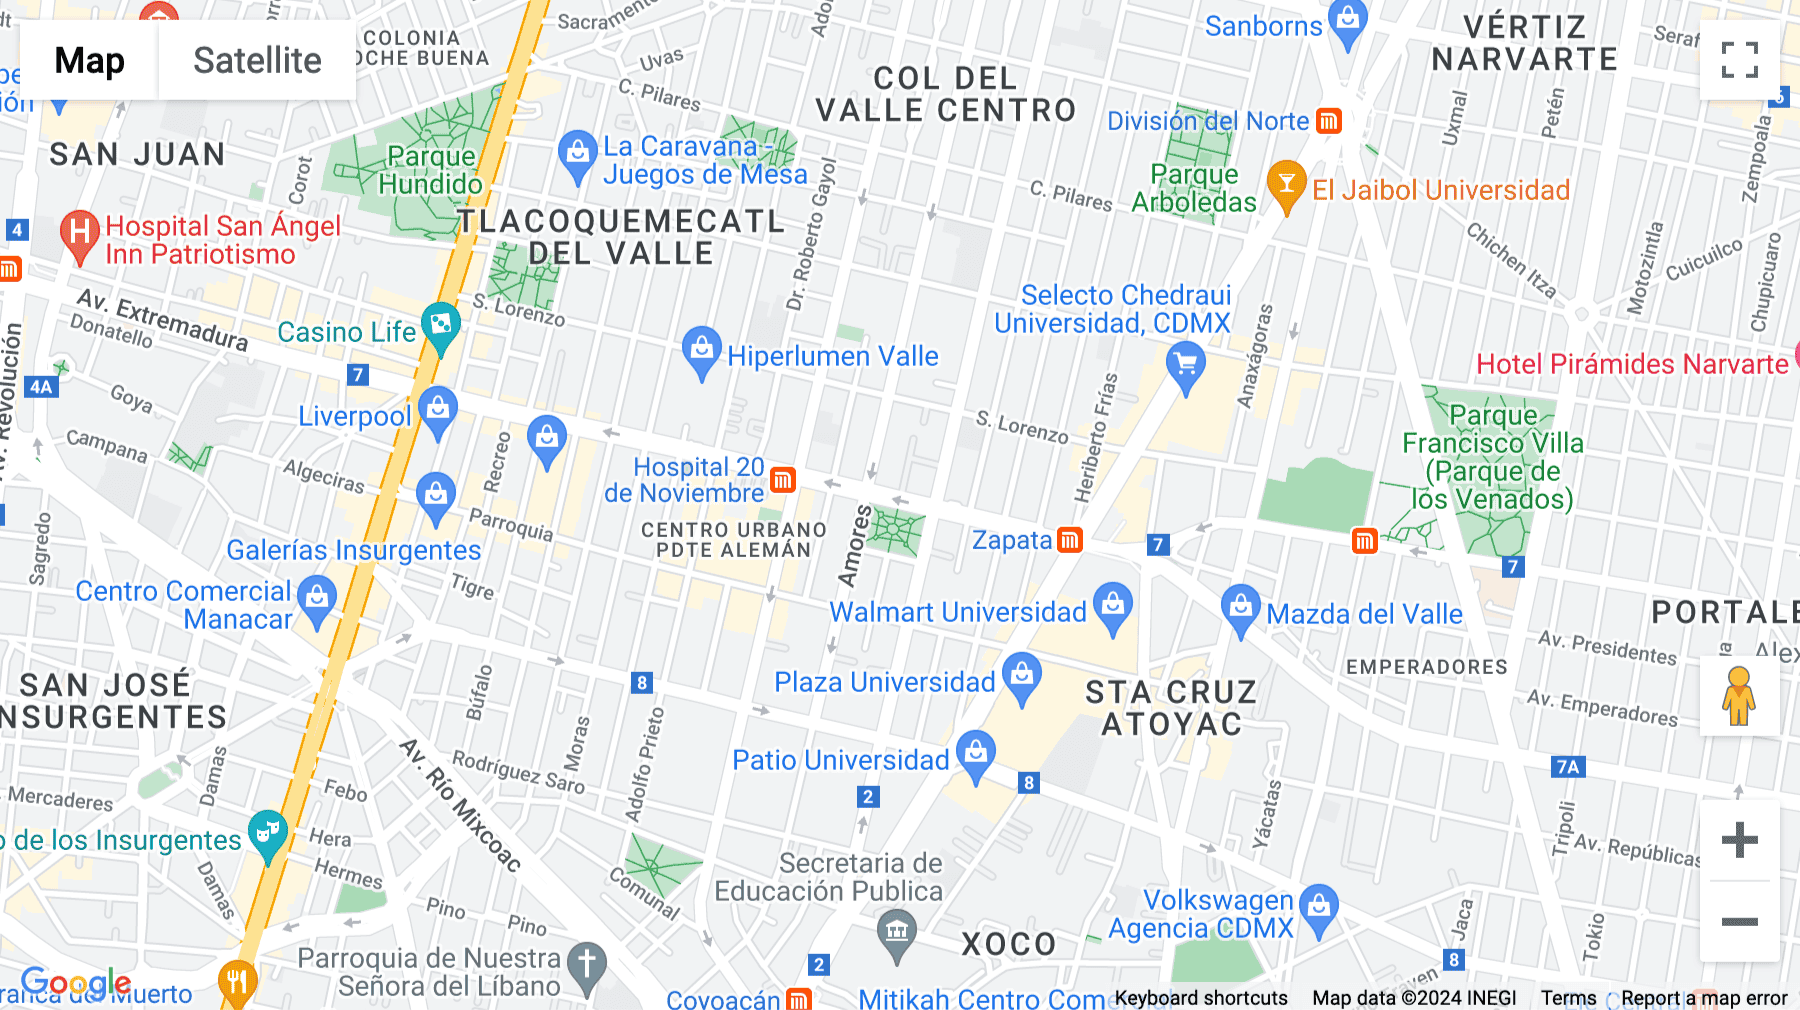 Click for interative map of Gabriel Mancera, Col. Del Valle Centro, Mexico City